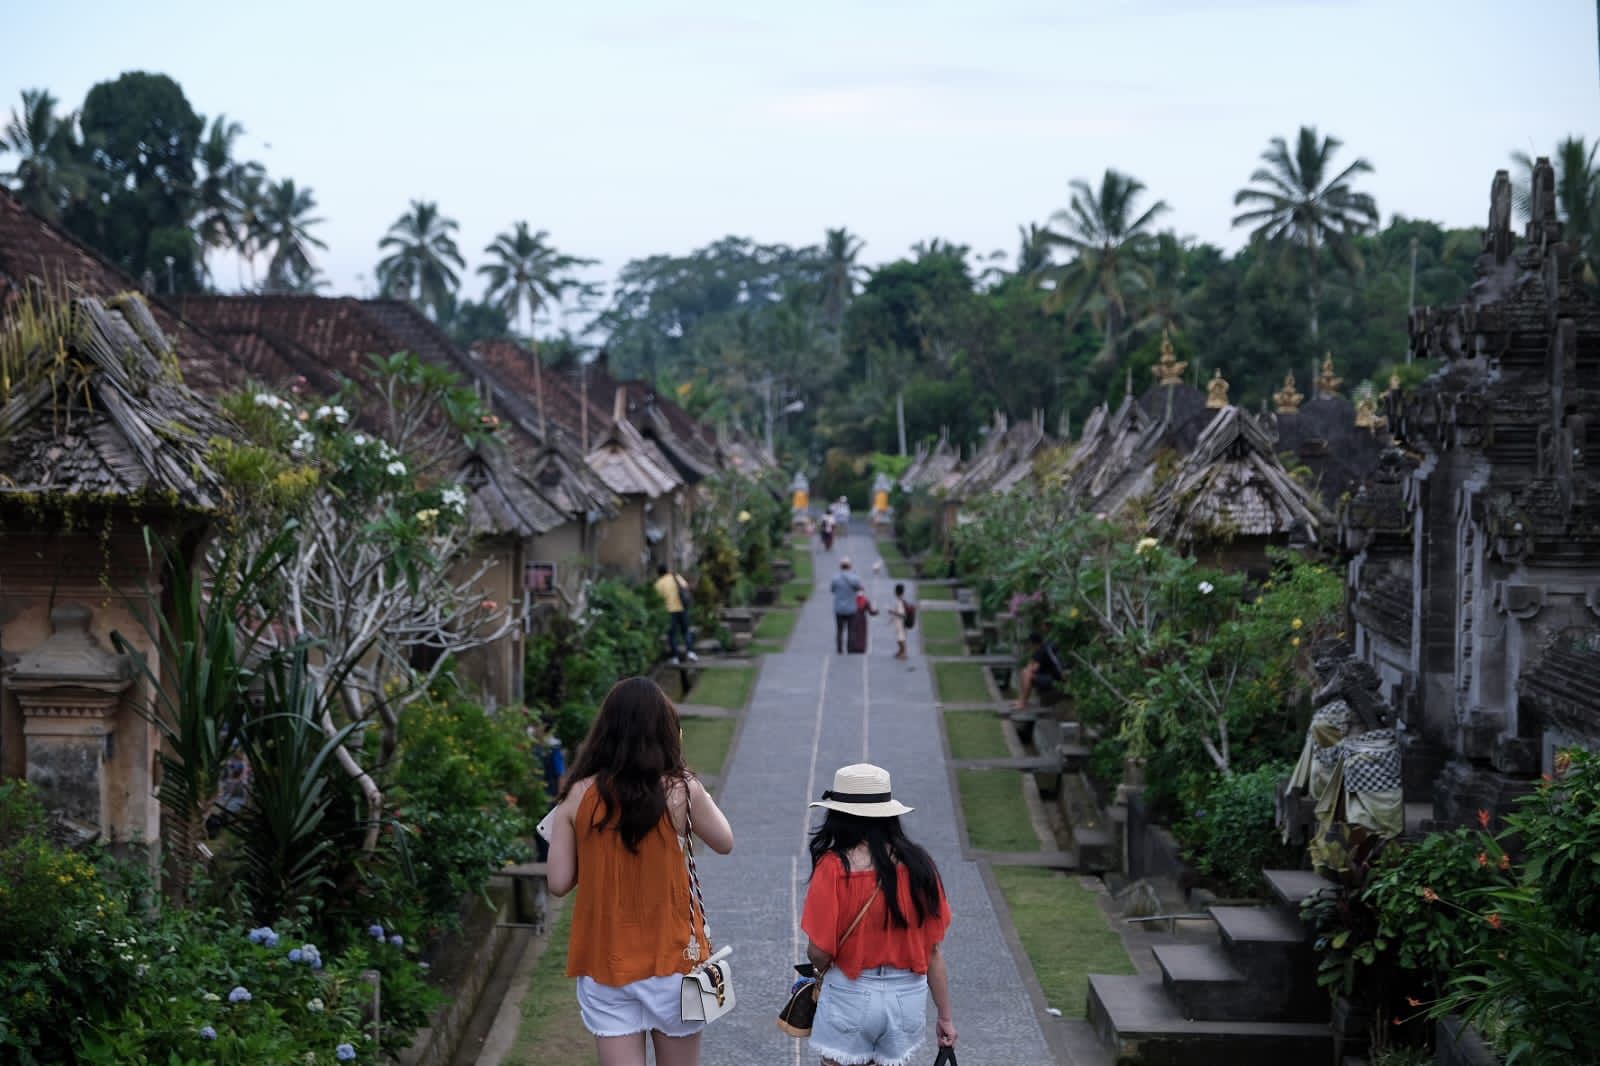 Anugerah Desa Wisata Indonesia 2023 mulai digelar.